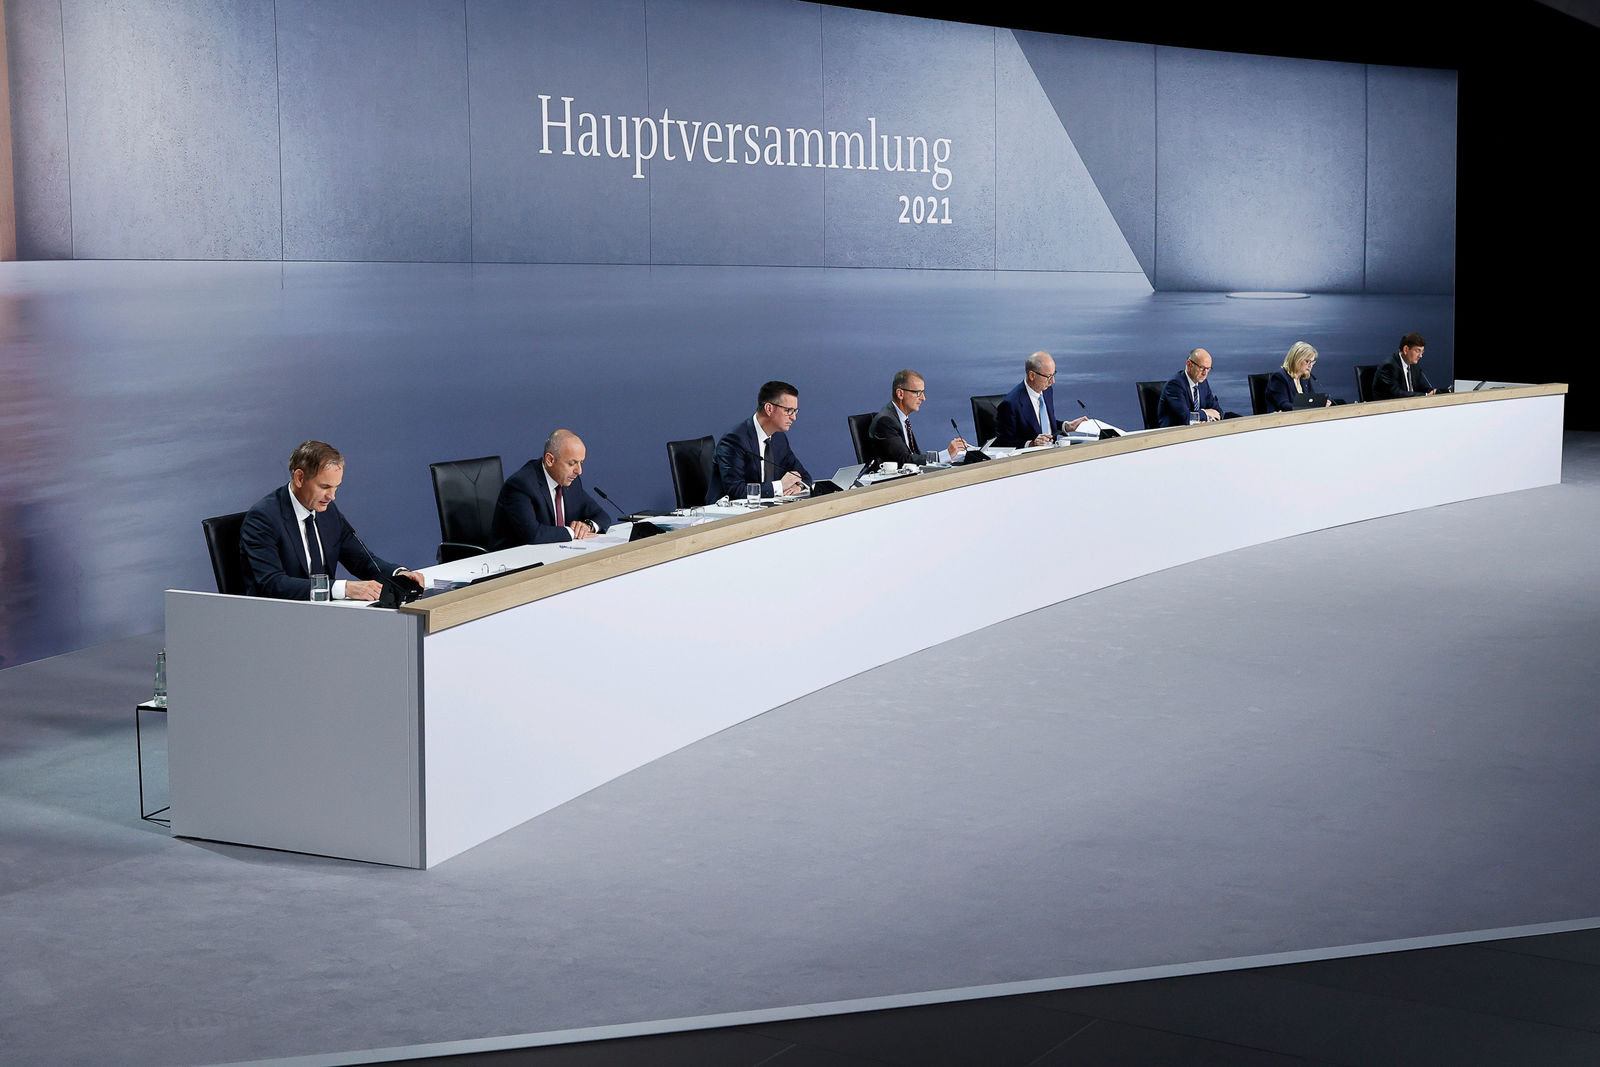 Virtuelle Hauptversammlung 2021 der Volkswagen Aktiengesellschaft